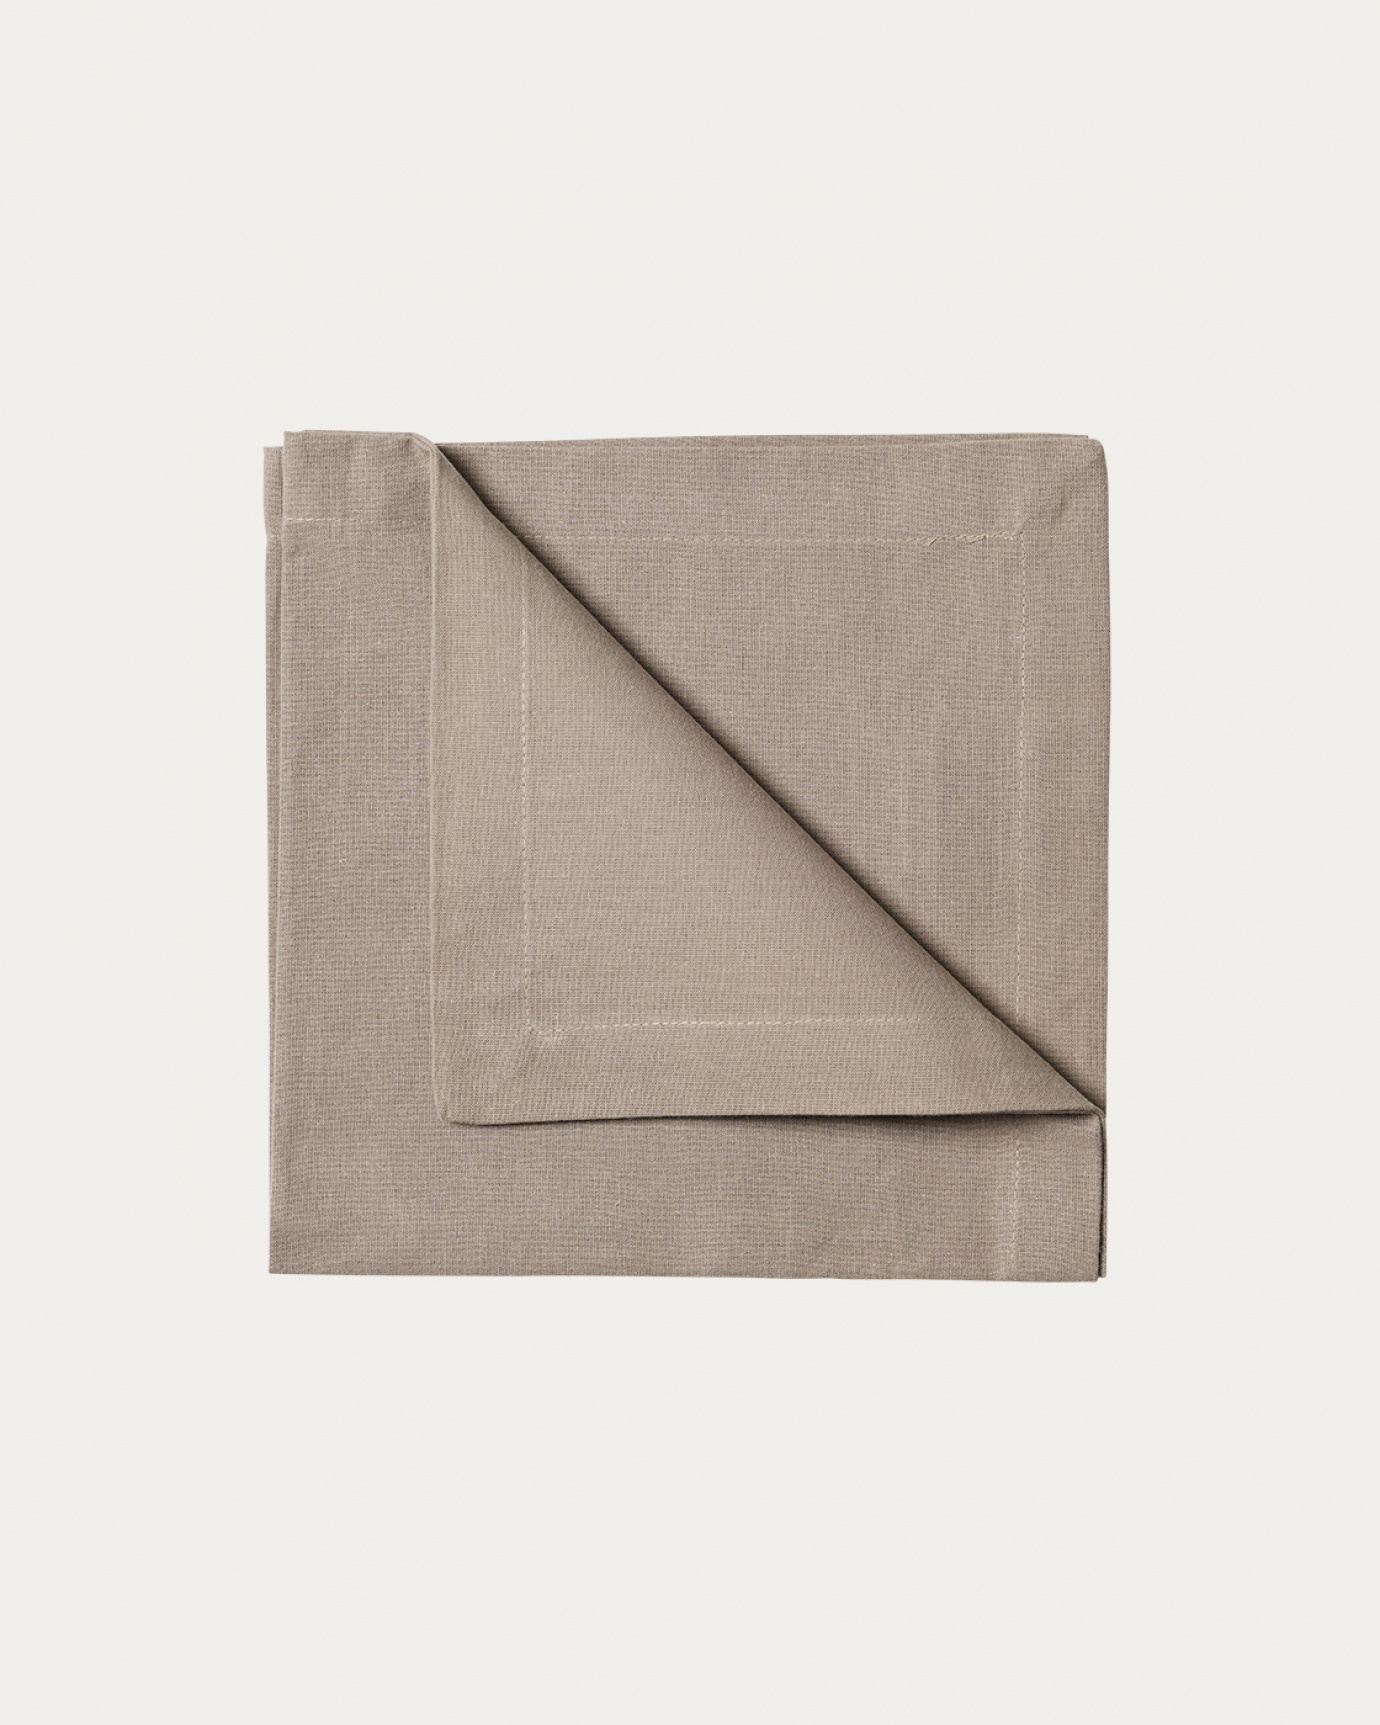 Image du produit serviette de table ROBERT taupe en coton doux de LINUM DESIGN. Taille 45 x 45 cm et vendu en lot de 4.